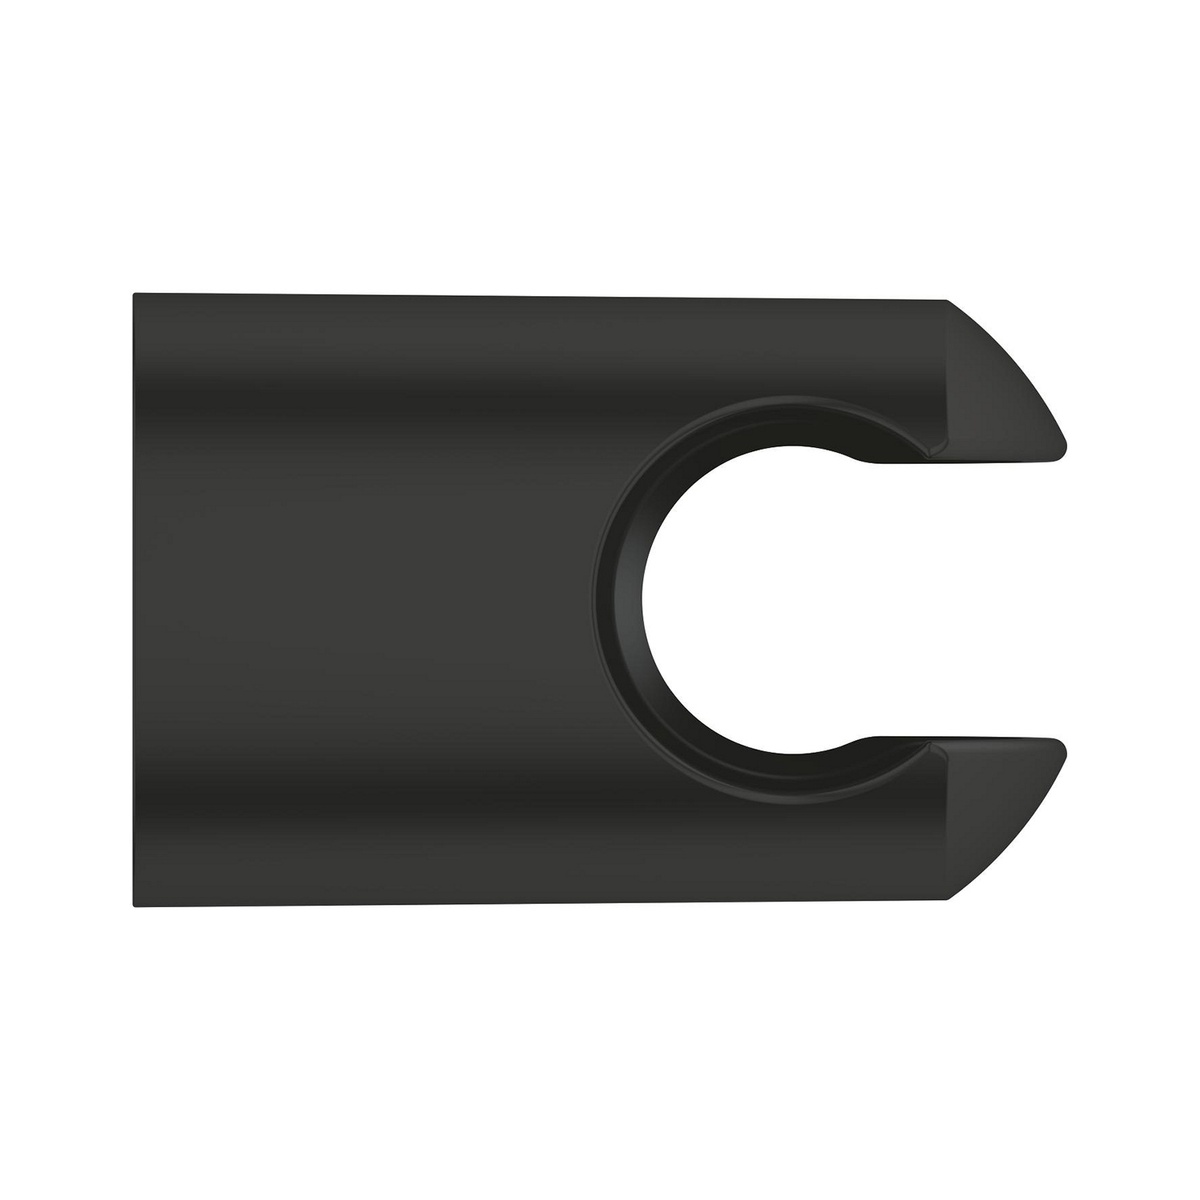 Тримач для ручної душової лійки GROHE QuickFix Vitalio Universal пластиковий чорний 279582430